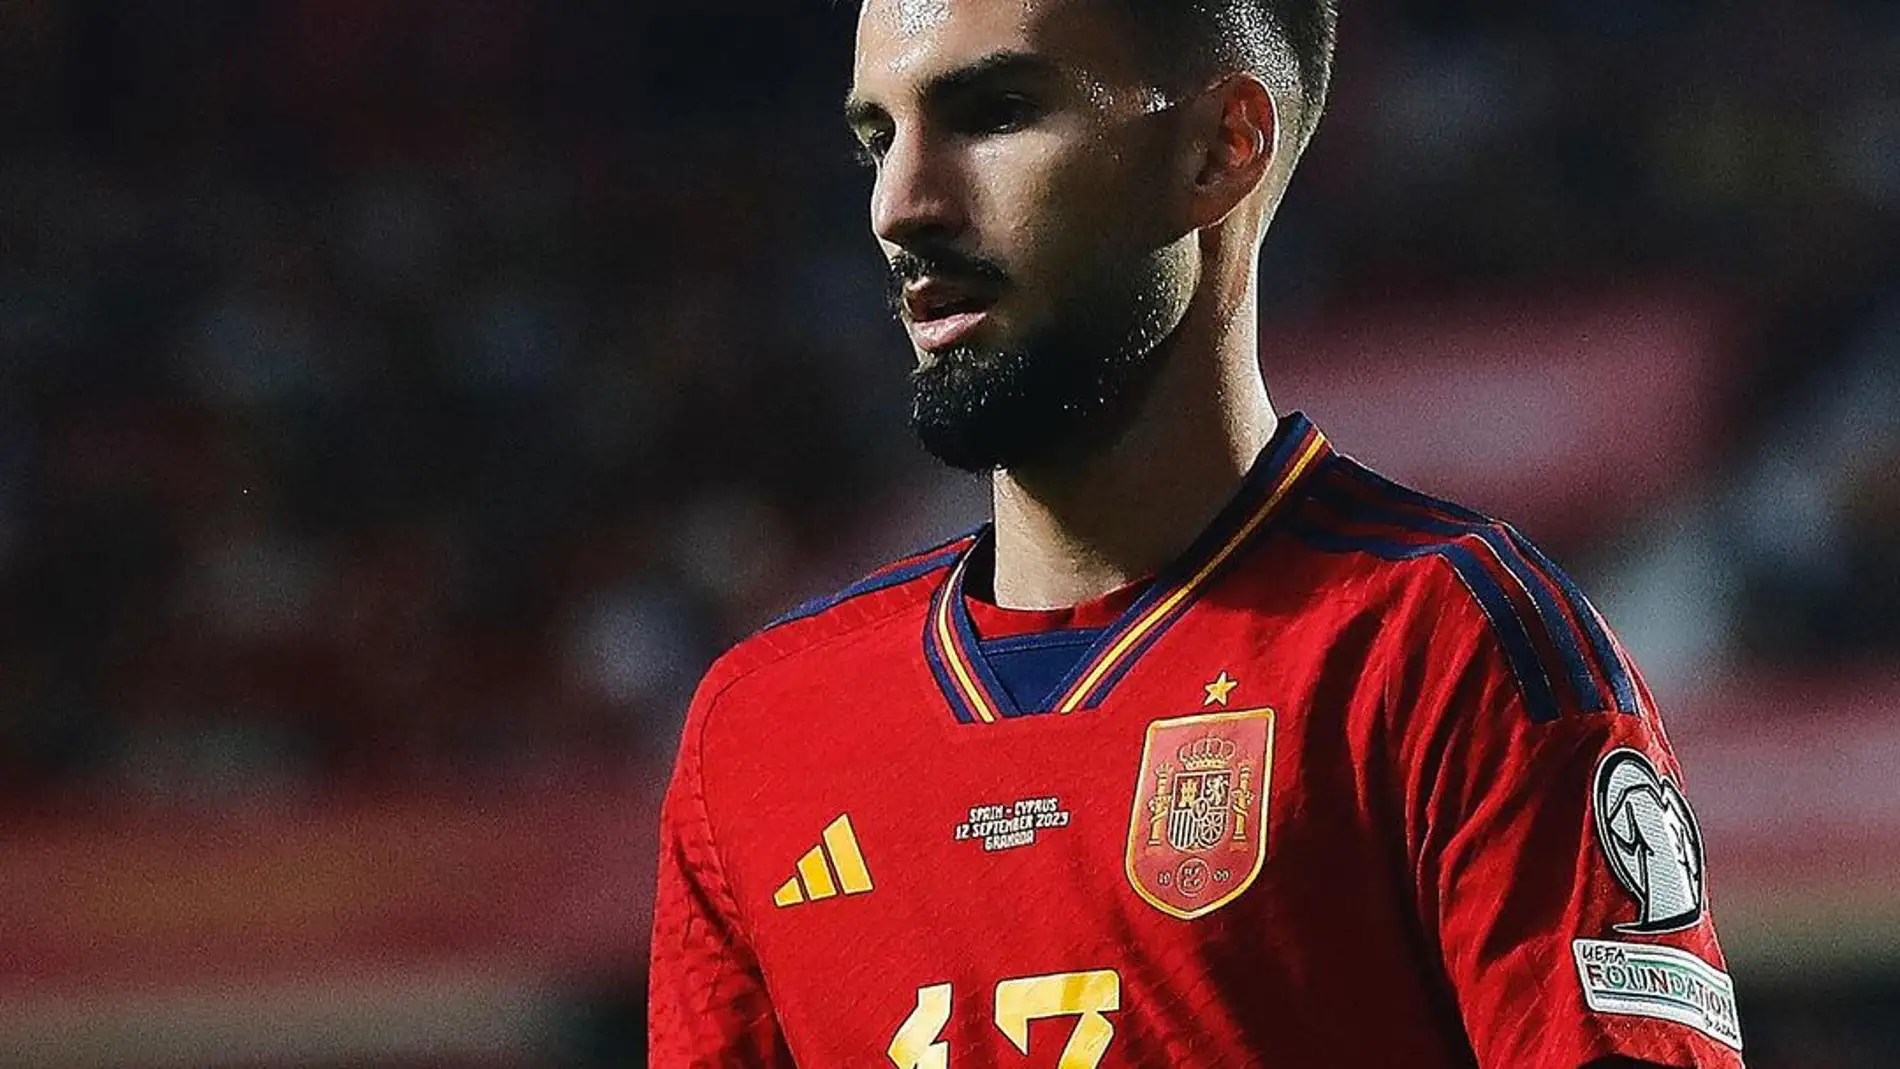 El futbolista almeriense Alex Baena debuta como internacional con la selección española ante Chipre